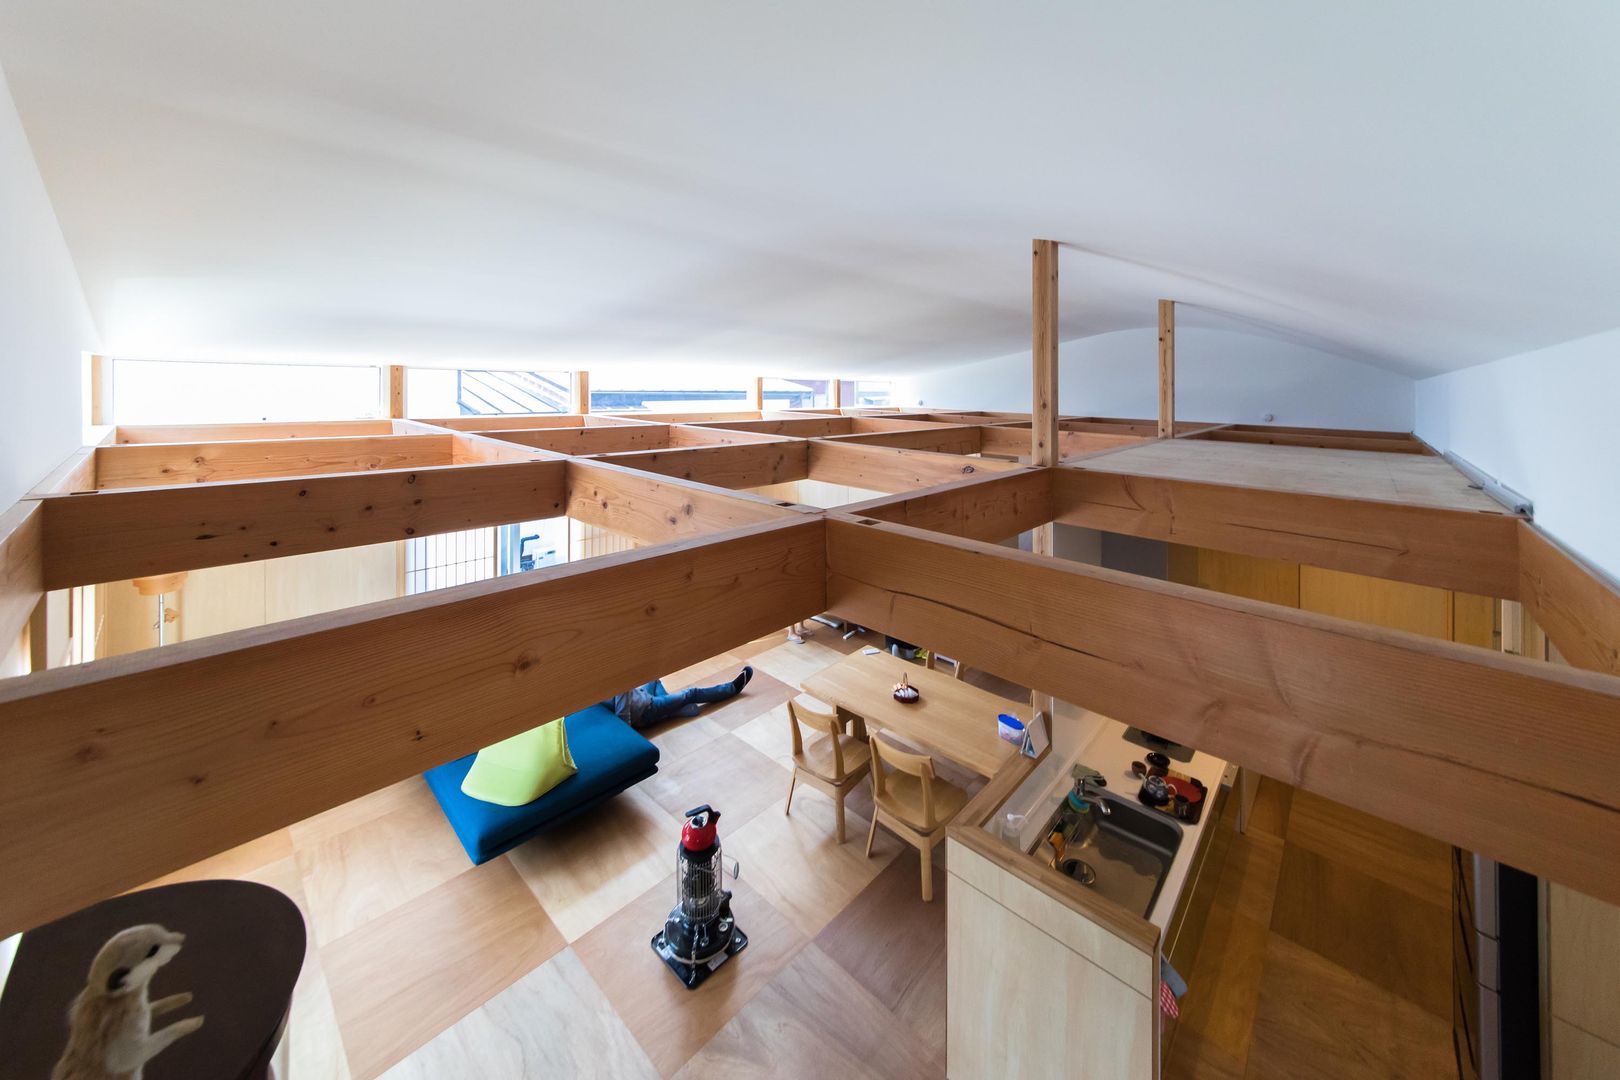 『間仕切りと大収納の家』将来の変化にも容易に対応できる住まい, イン-デ-コード design office イン-デ-コード design office Living room Wood Wood effect